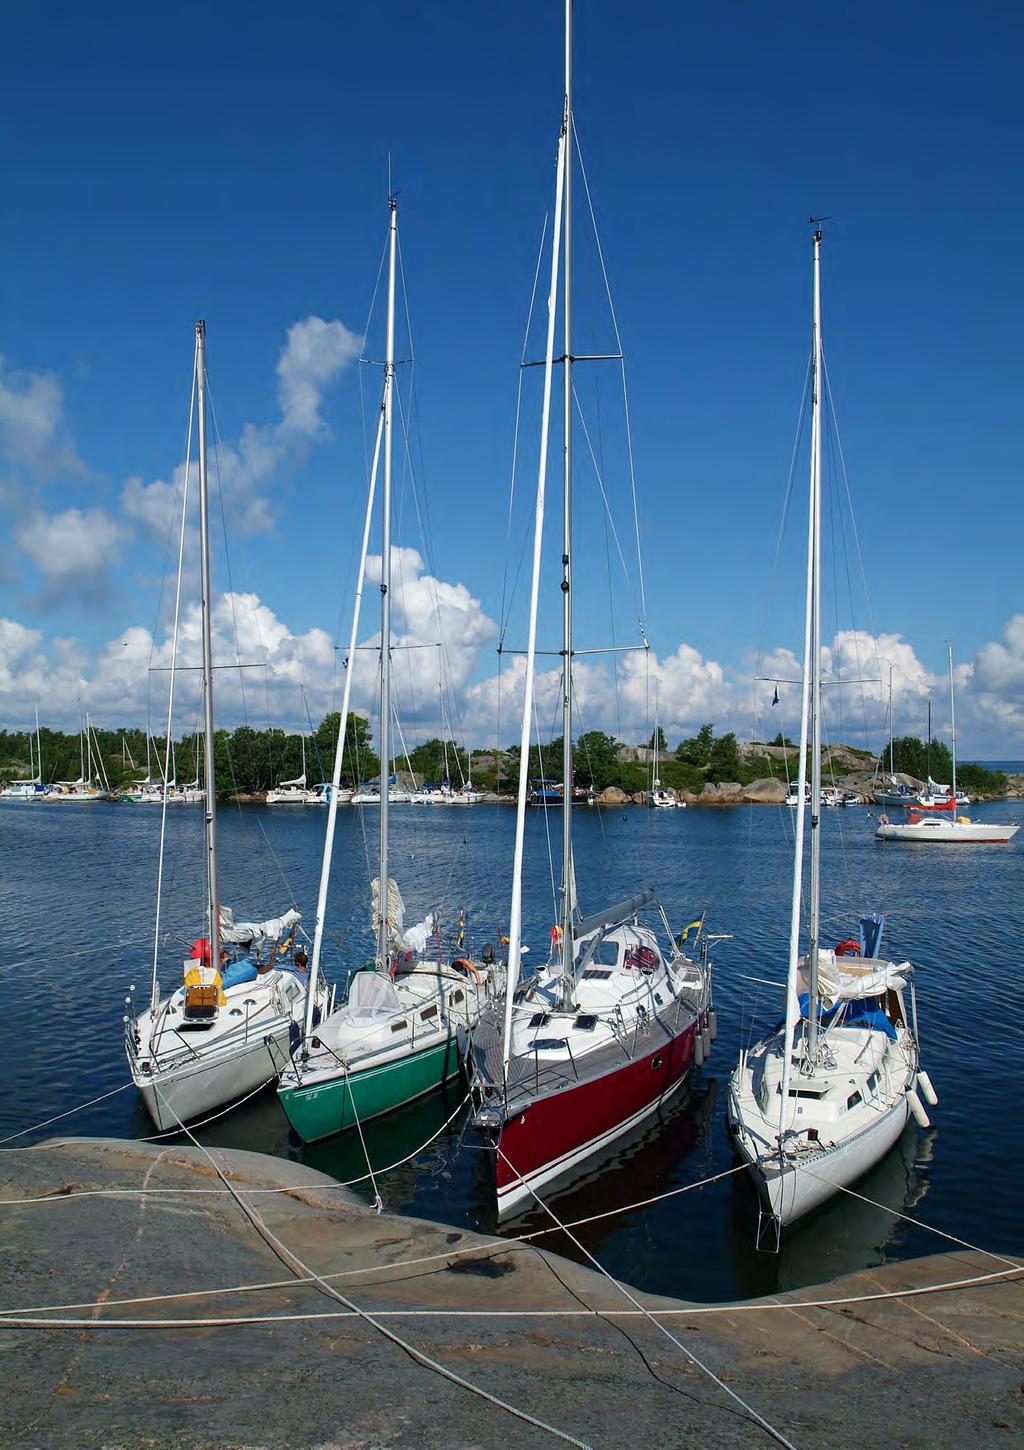 1 000 BÅTKLUBBAR I SVERIGE I Sverige finns det drygt 1 000 båtklubbar. De har tillsammans 250 000 medlemmar.